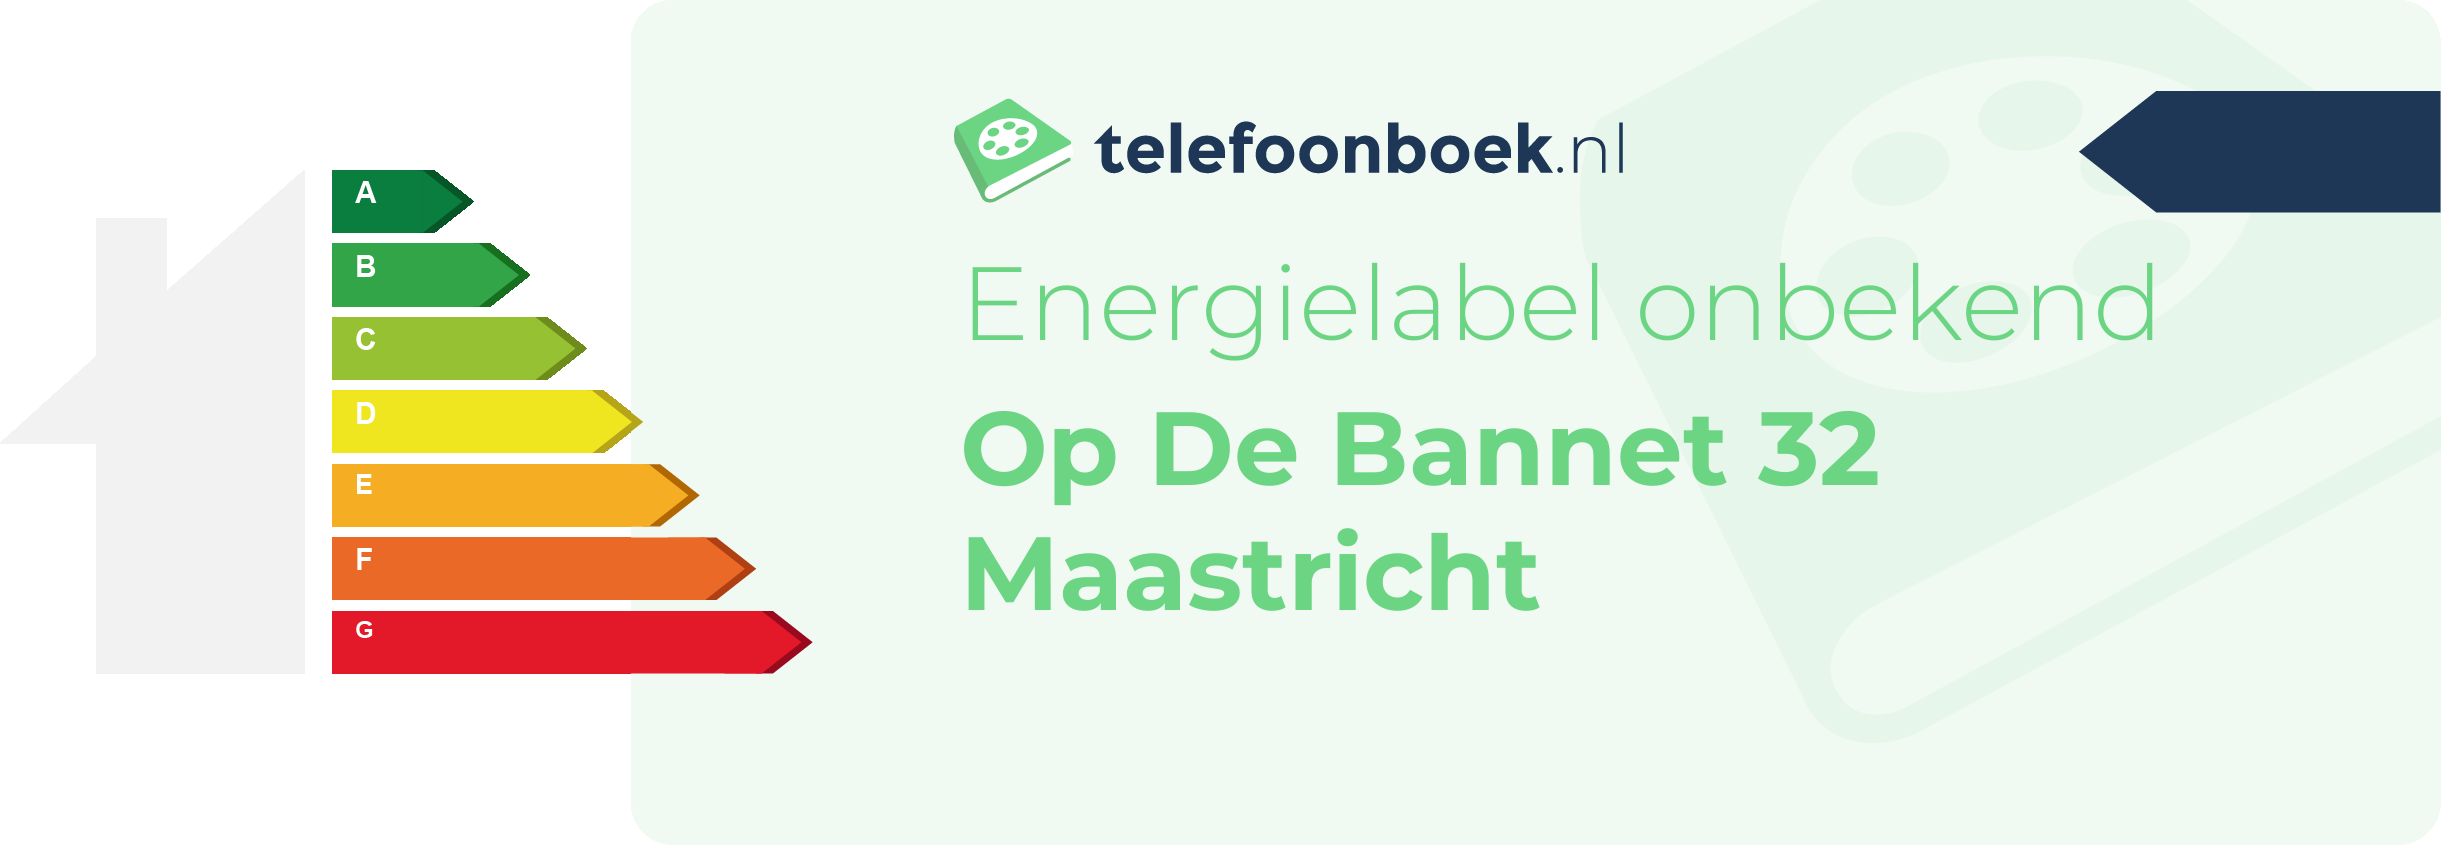 Energielabel Op De Bannet 32 Maastricht